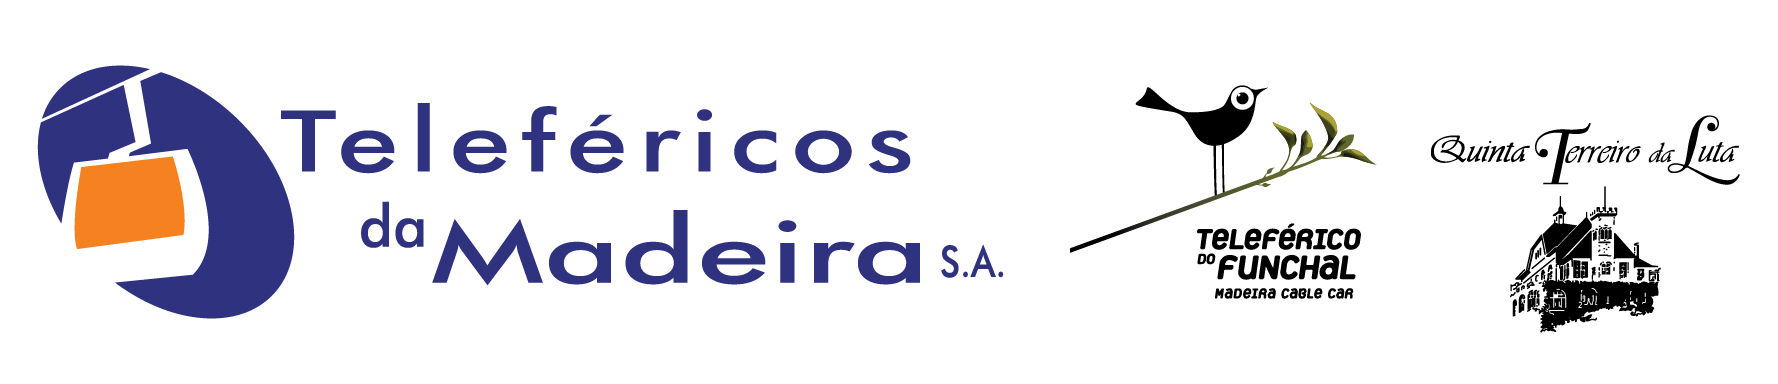 Teleféricos Madeira logos 01